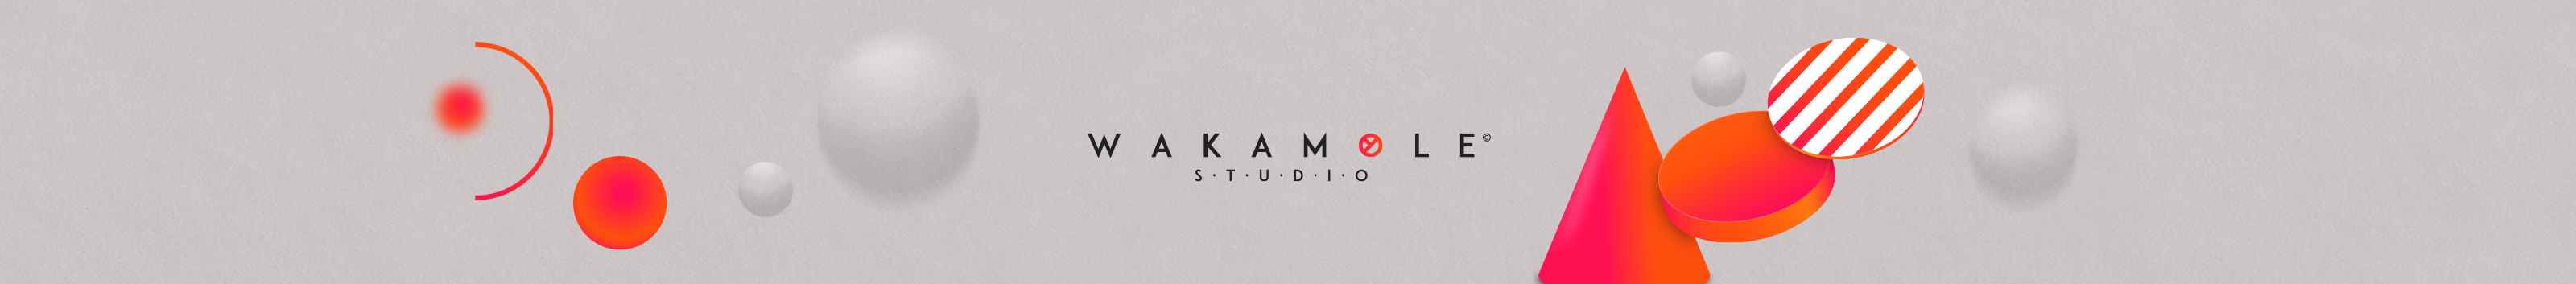 Banner profilu uživatele Wakamole Studio